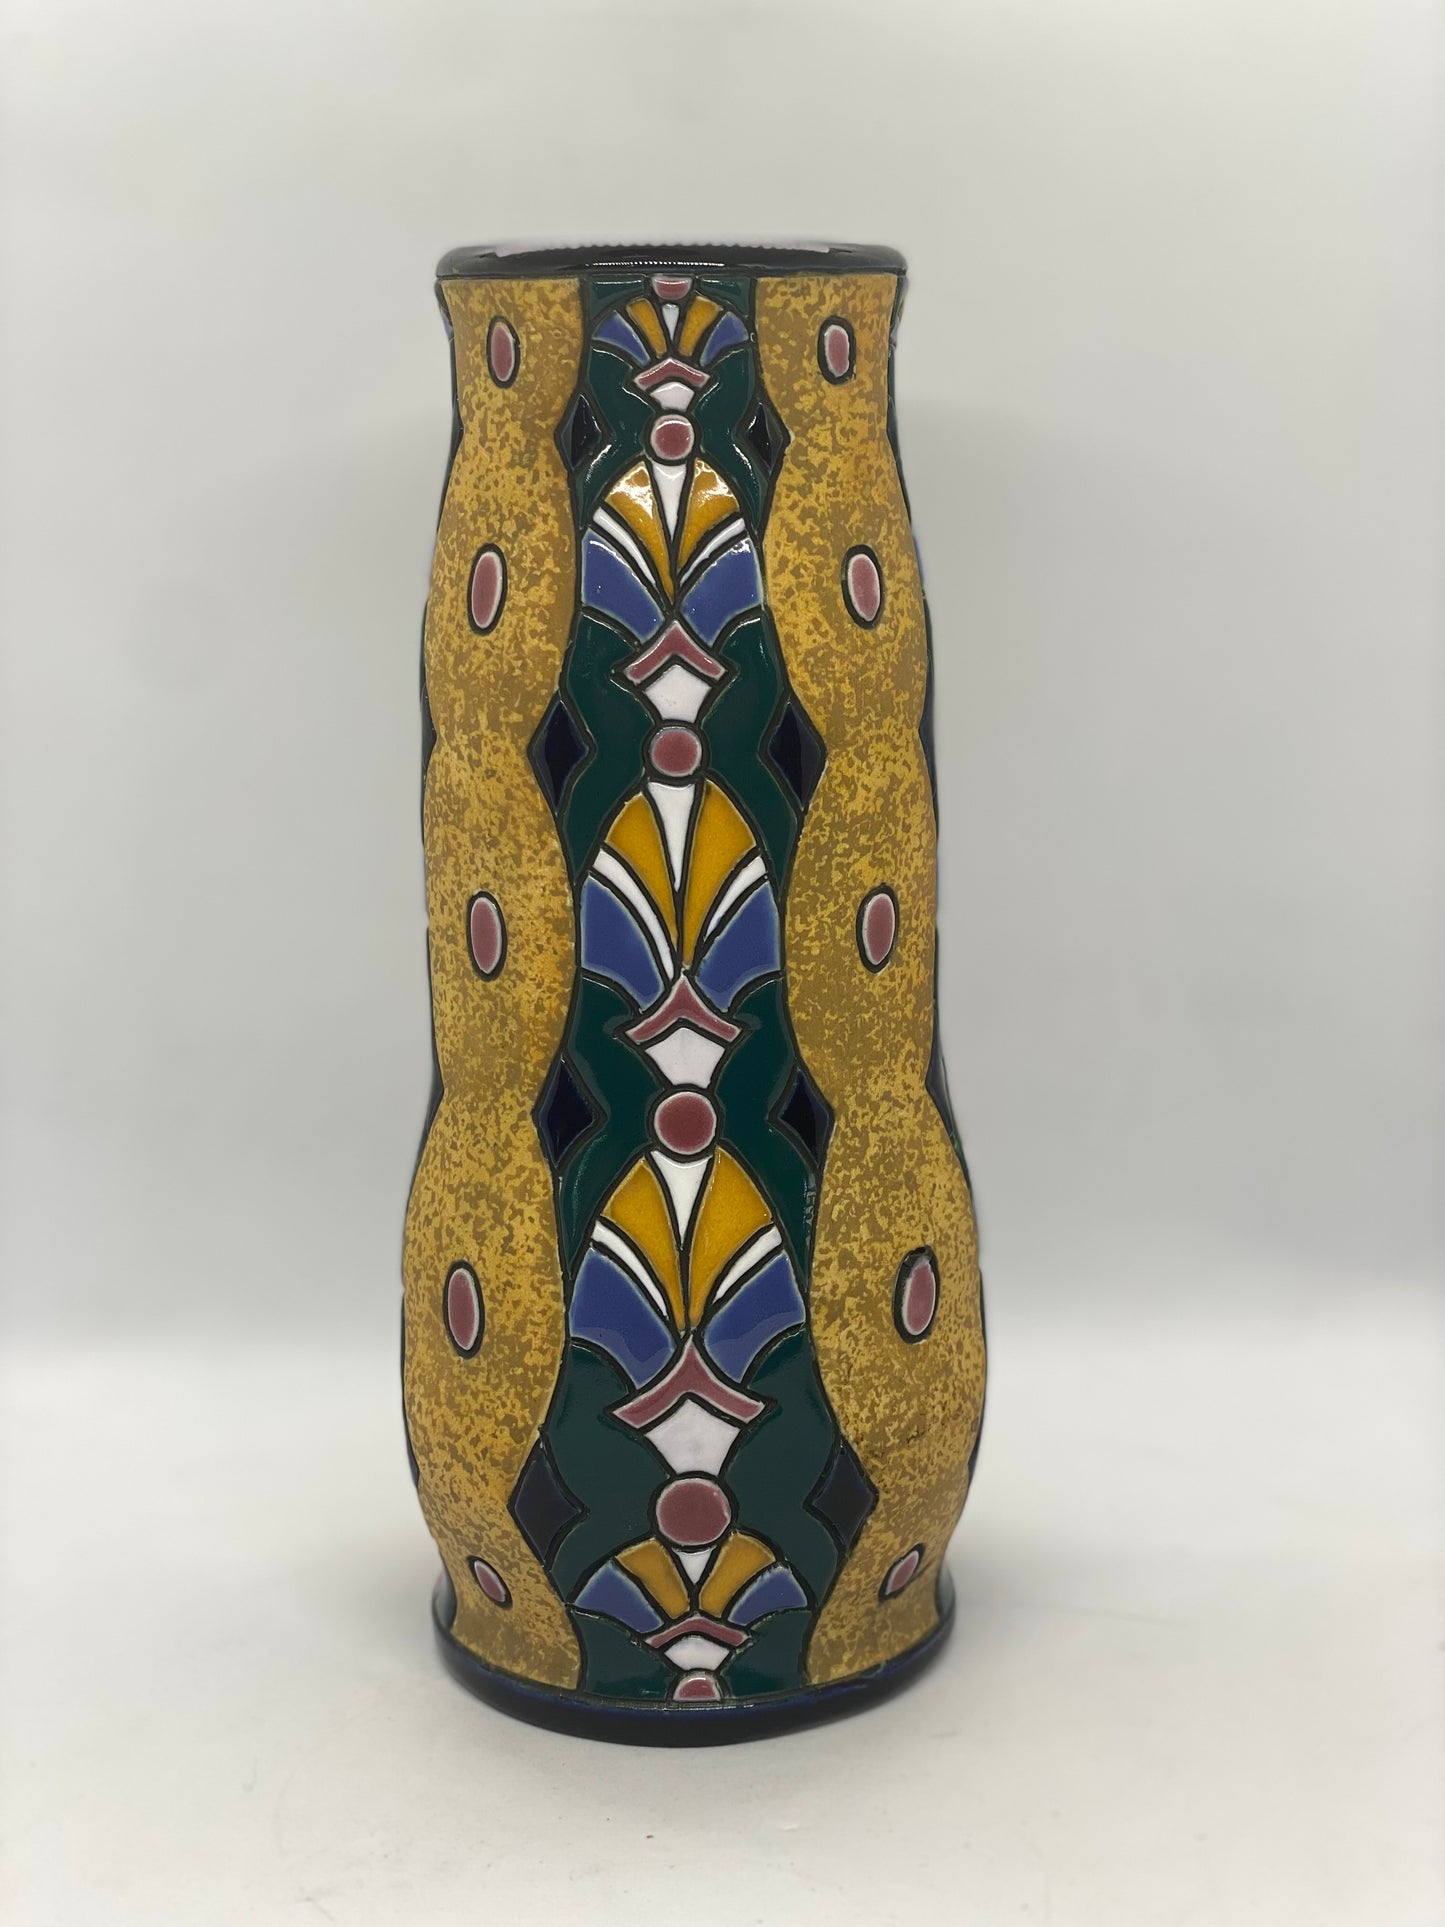 Czech Art Deco Vase c. 1920s to 1930s